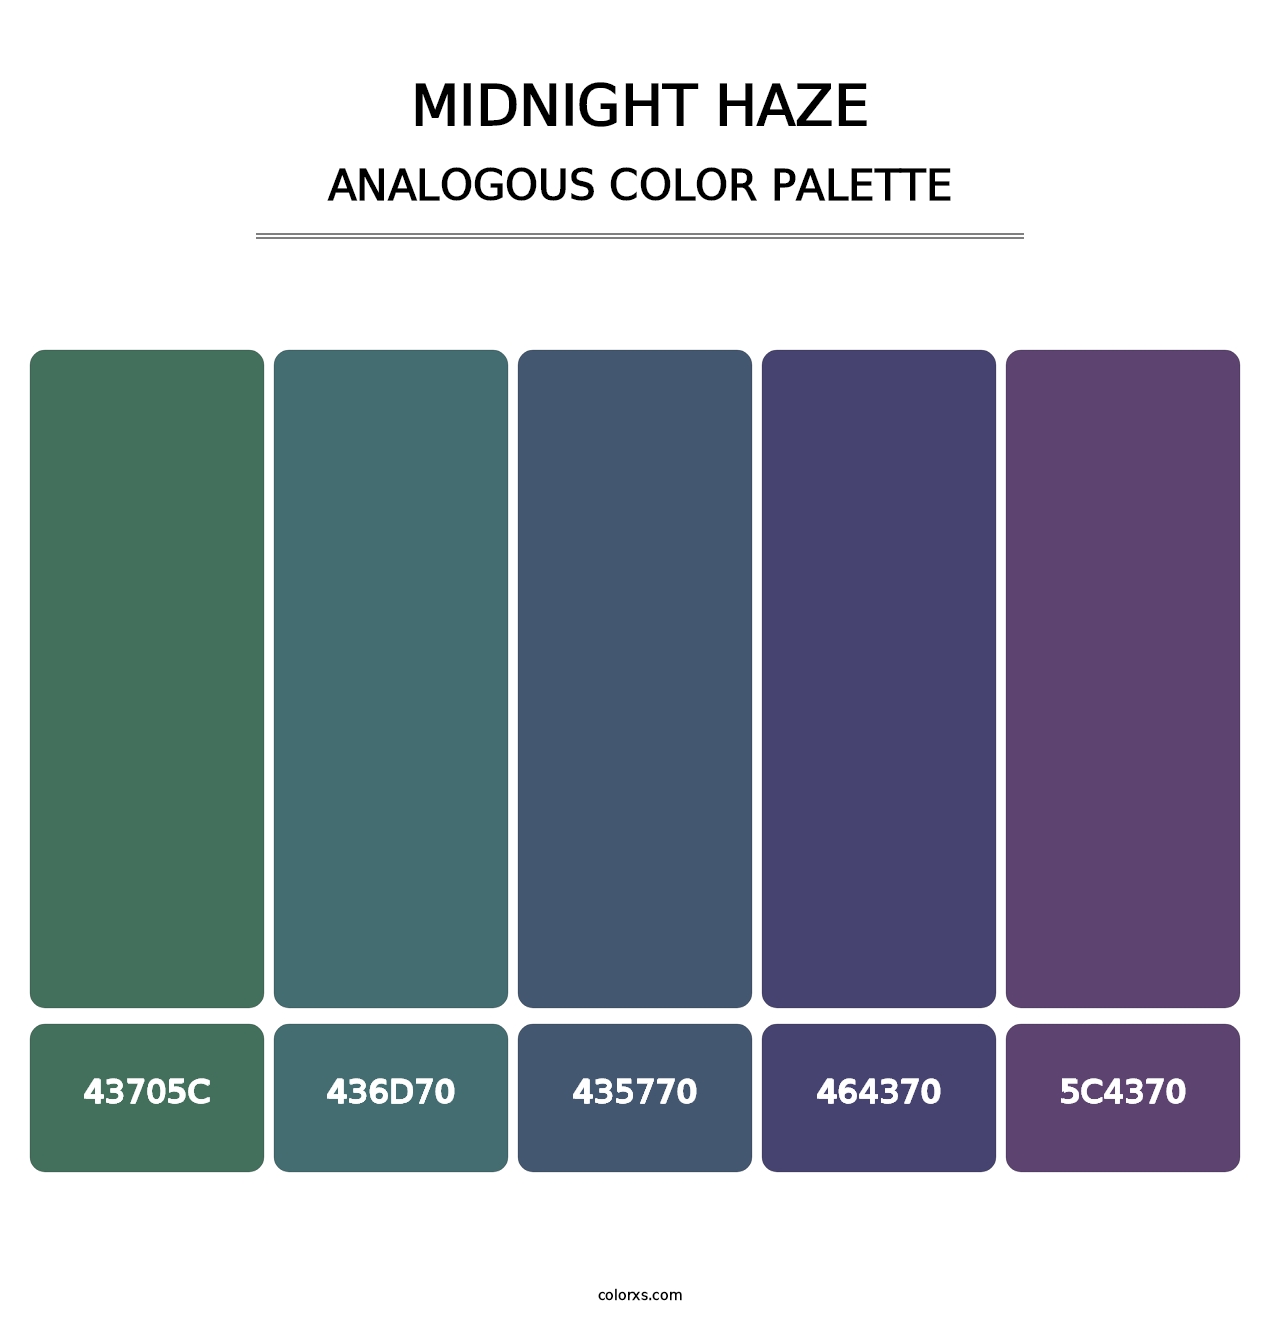 Midnight Haze - Analogous Color Palette